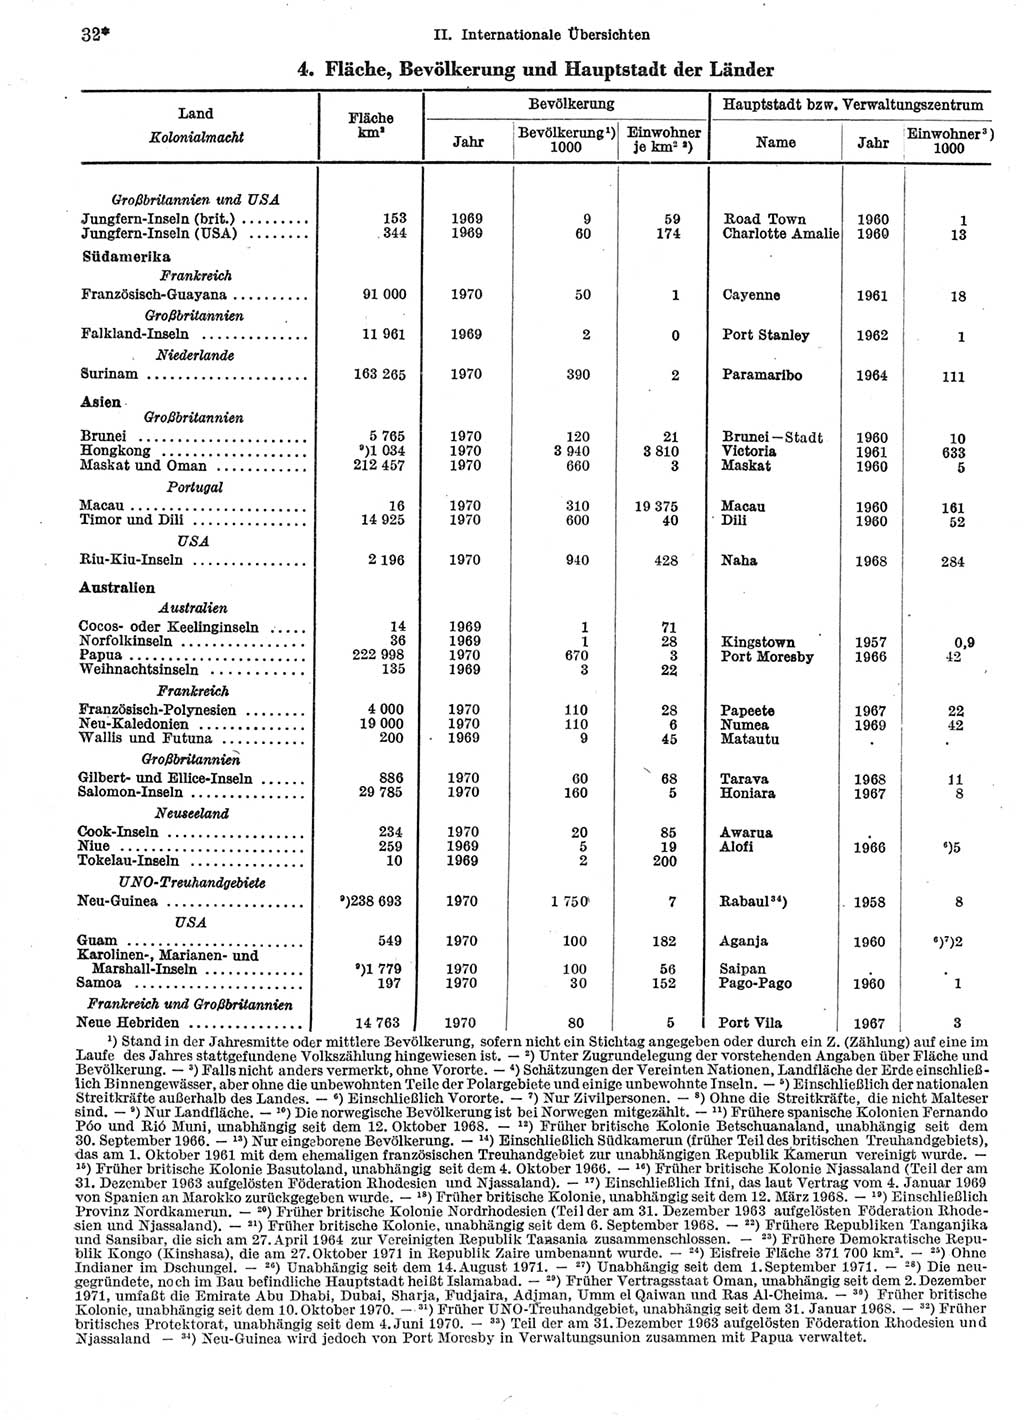 Statistisches Jahrbuch der Deutschen Demokratischen Republik (DDR) 1972, Seite 32 (Stat. Jb. DDR 1972, S. 32)